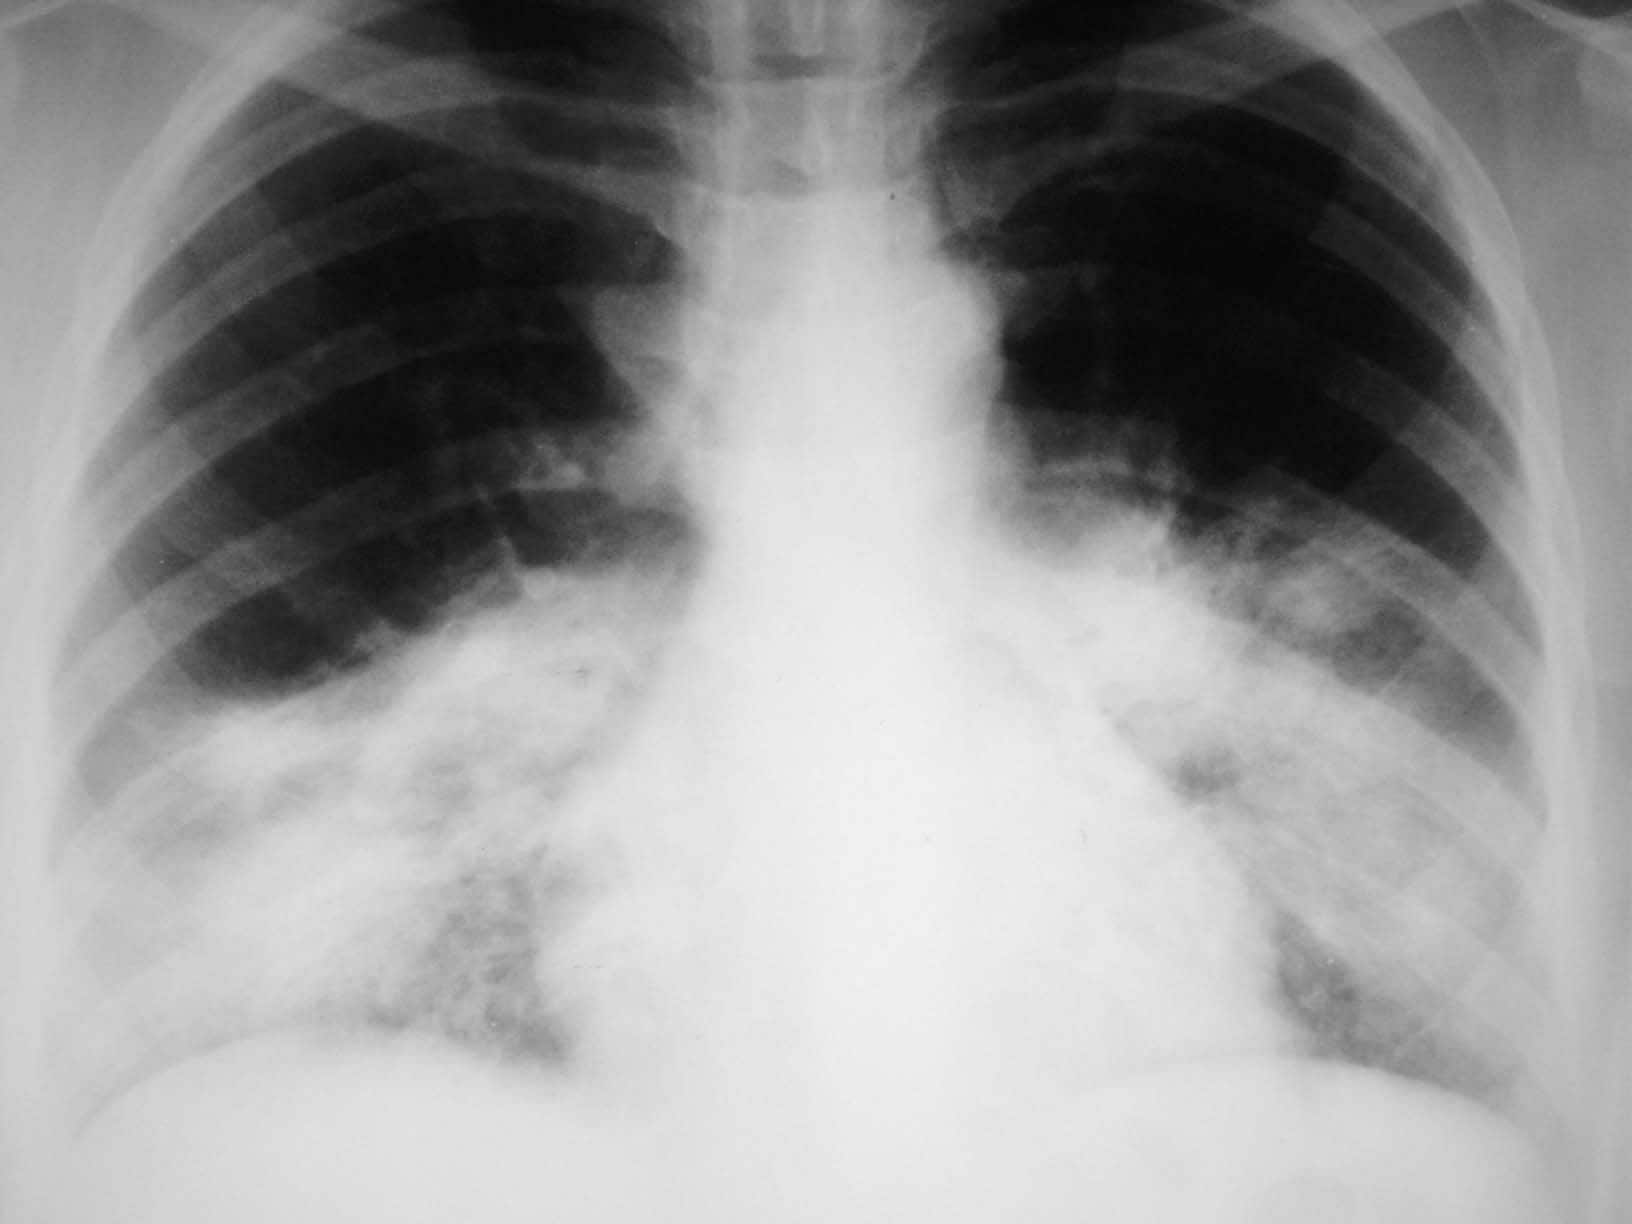 Mycoplasma Pneumonia: Causes, Symptoms, and Diagnosis